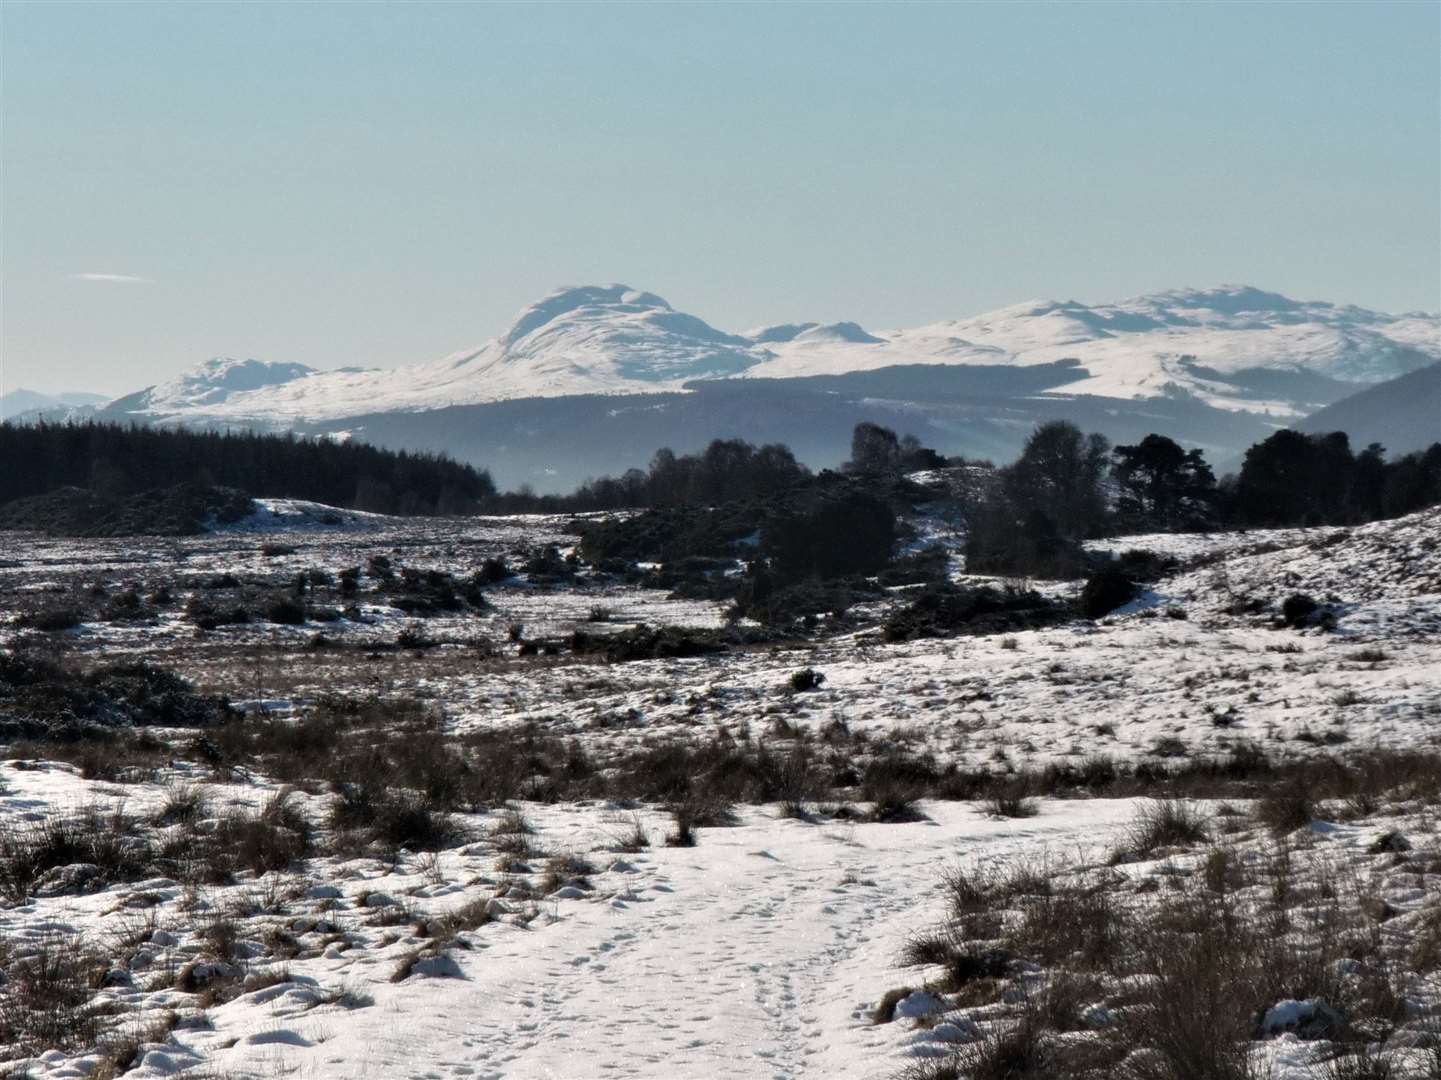 A grand view of snowy Meall Fuar-mhonaidh.